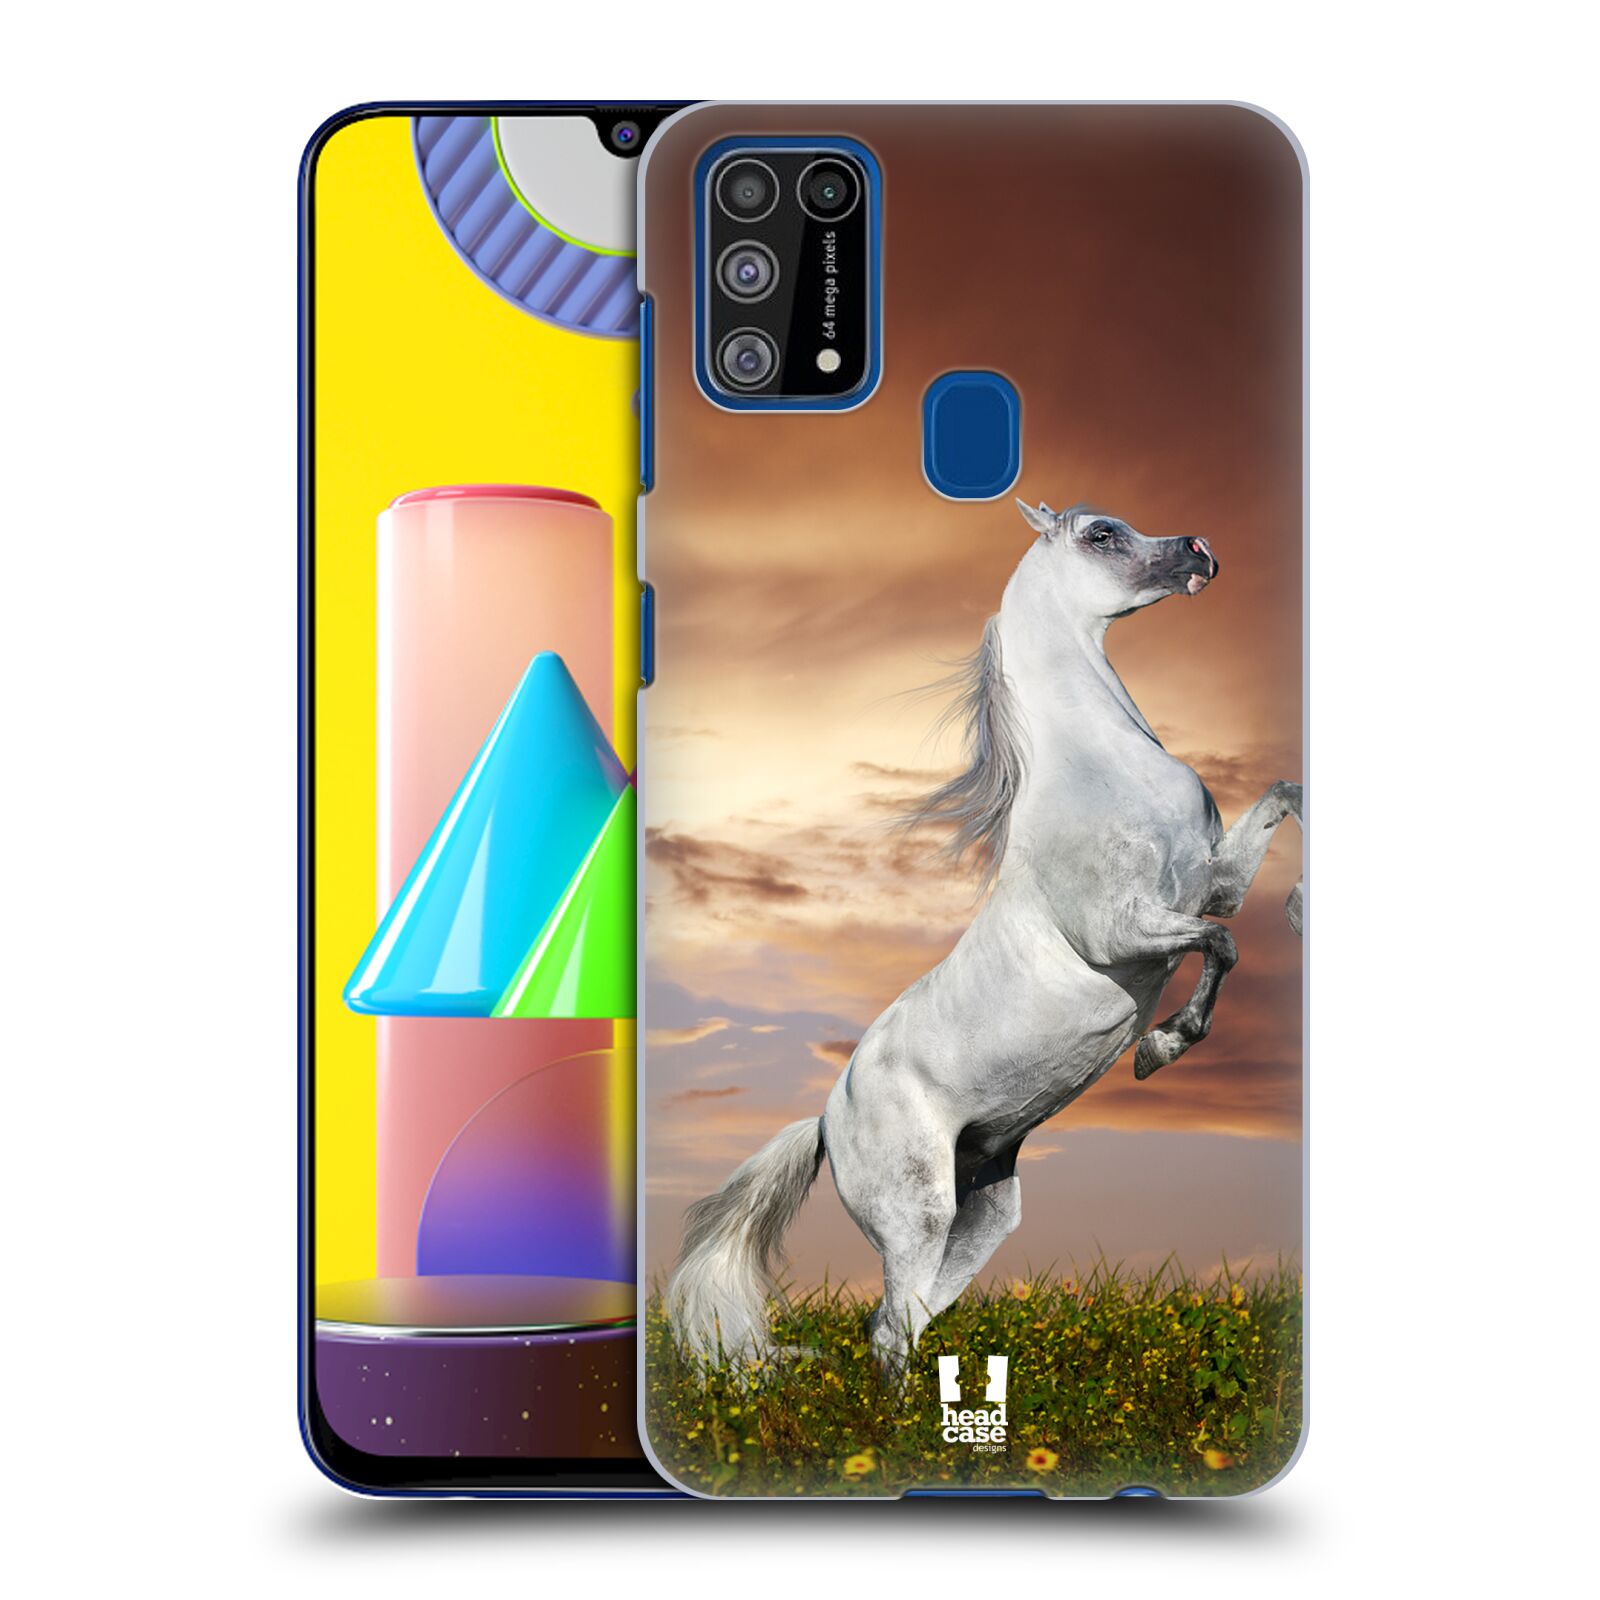 Zadní obal pro mobil Samsung Galaxy M31 - HEAD CASE - Svět zvířat divoký kůň